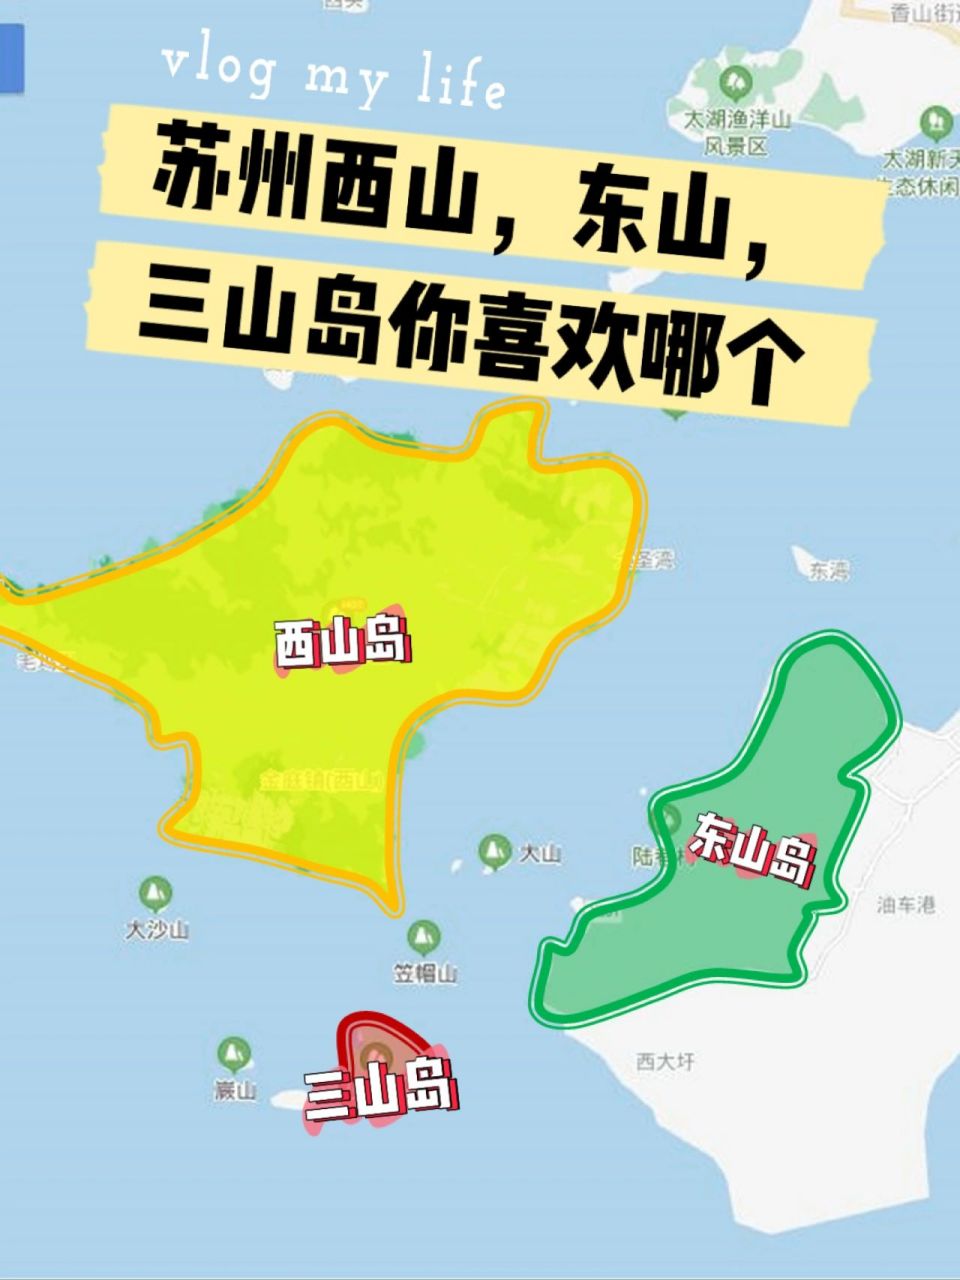 苏州三山岛地图图片